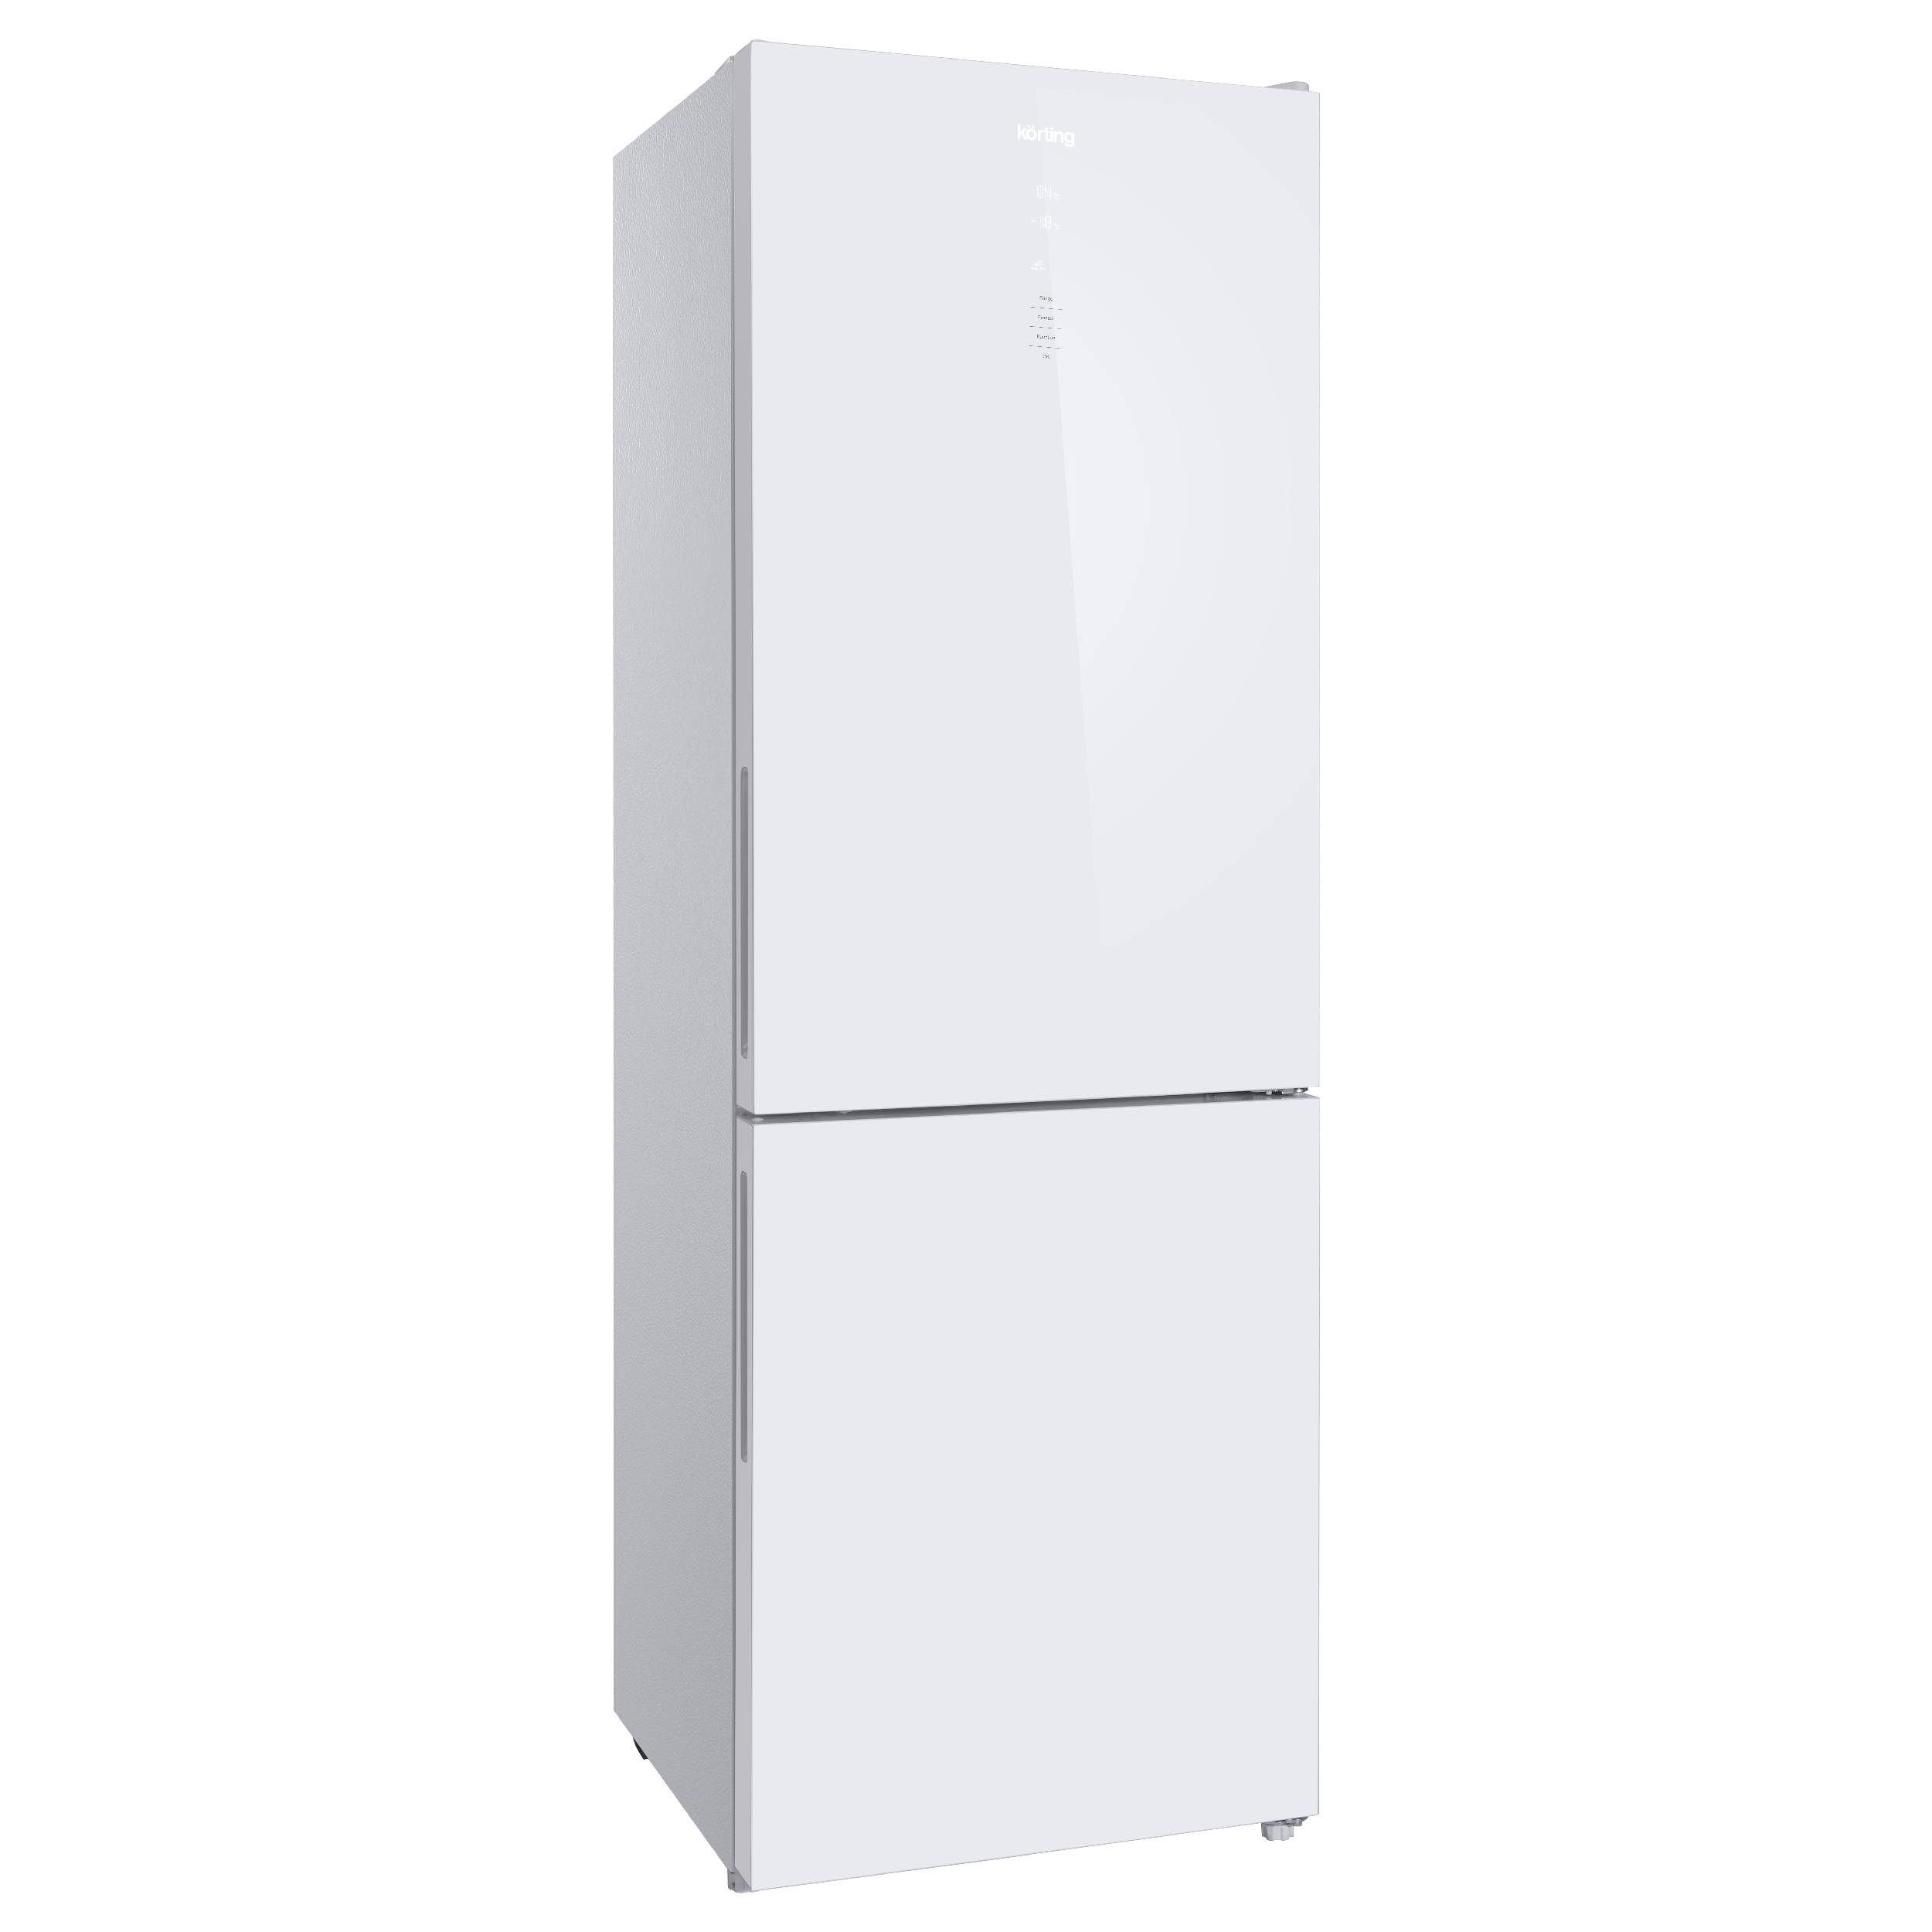 Холодильники индезит отзывы специалистов и покупателей. Bosch kgv39xw22r. Холодильник бош kgv36nw1ar. Bosch kgn33nw21u. Холодильник Bosch kgv36xw21r белый.